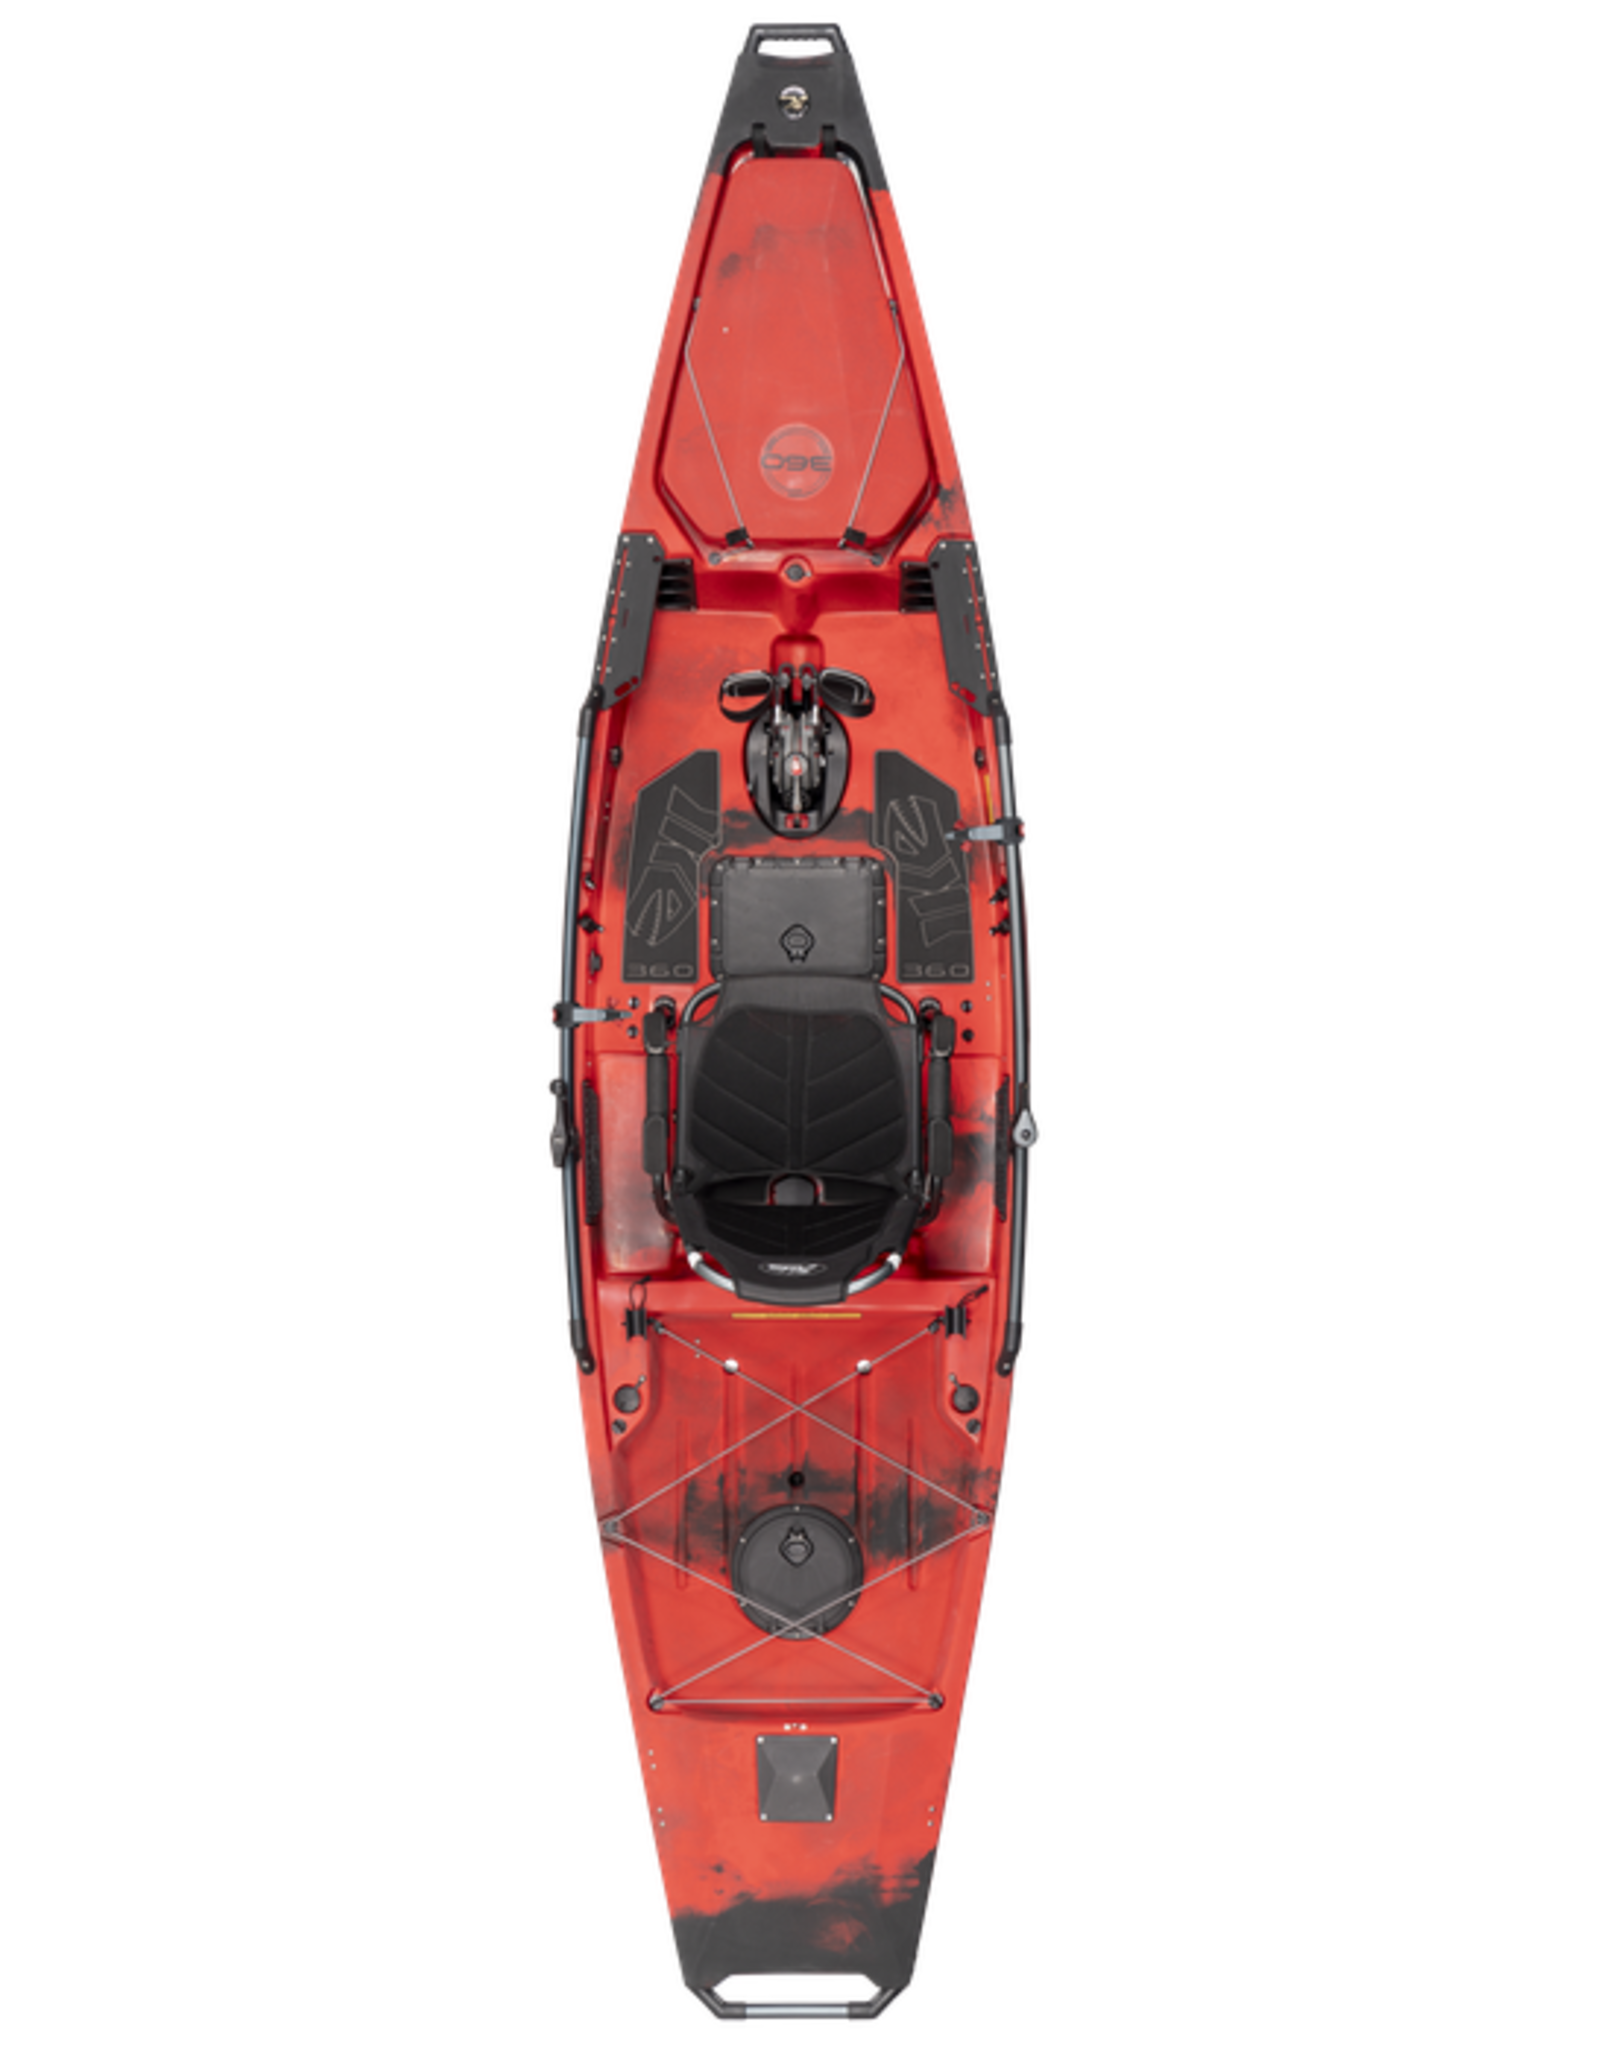 Hobie Hobie kayak Pro Angler 14 MD 360 Special Edition IKE